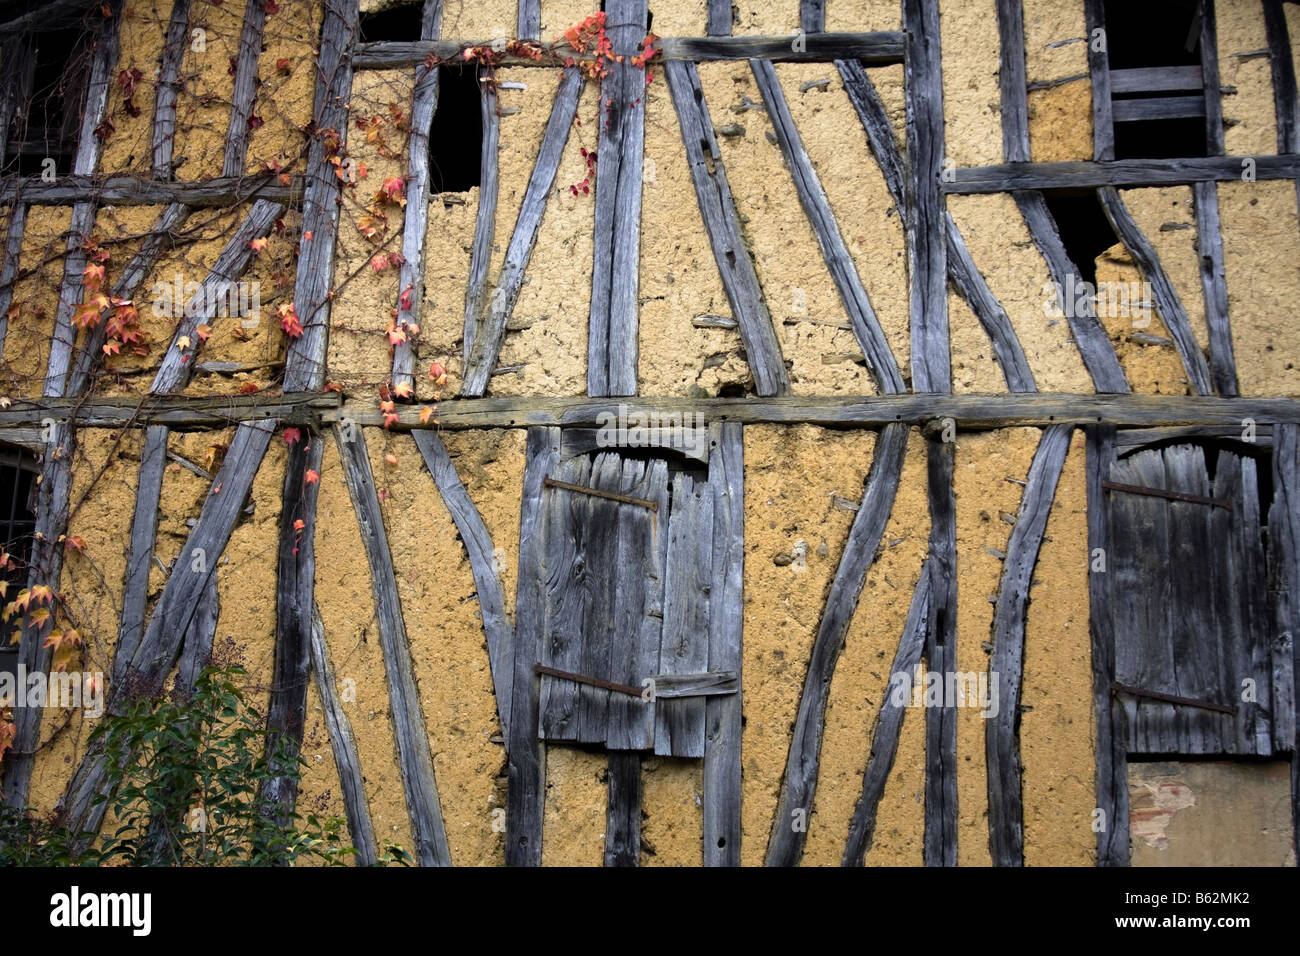 Vieille maison traditionnelle française, construit en bois. Eauze - Gers, dans le sud de la France Banque D'Images